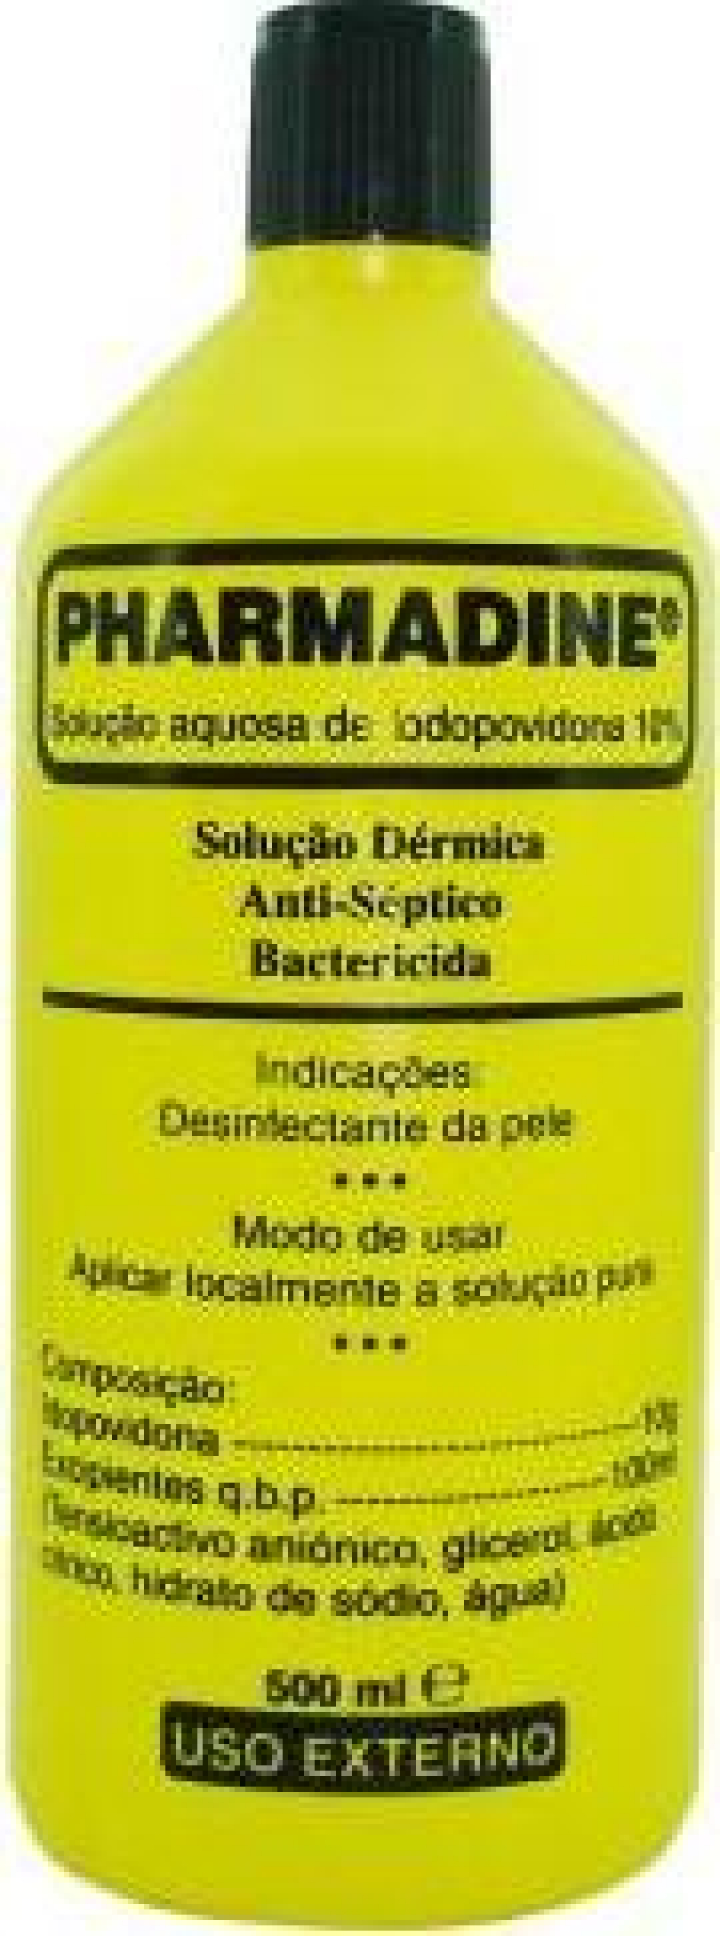 Iodopovidona dérmica - solução anti-séptica e bactericida 500ml